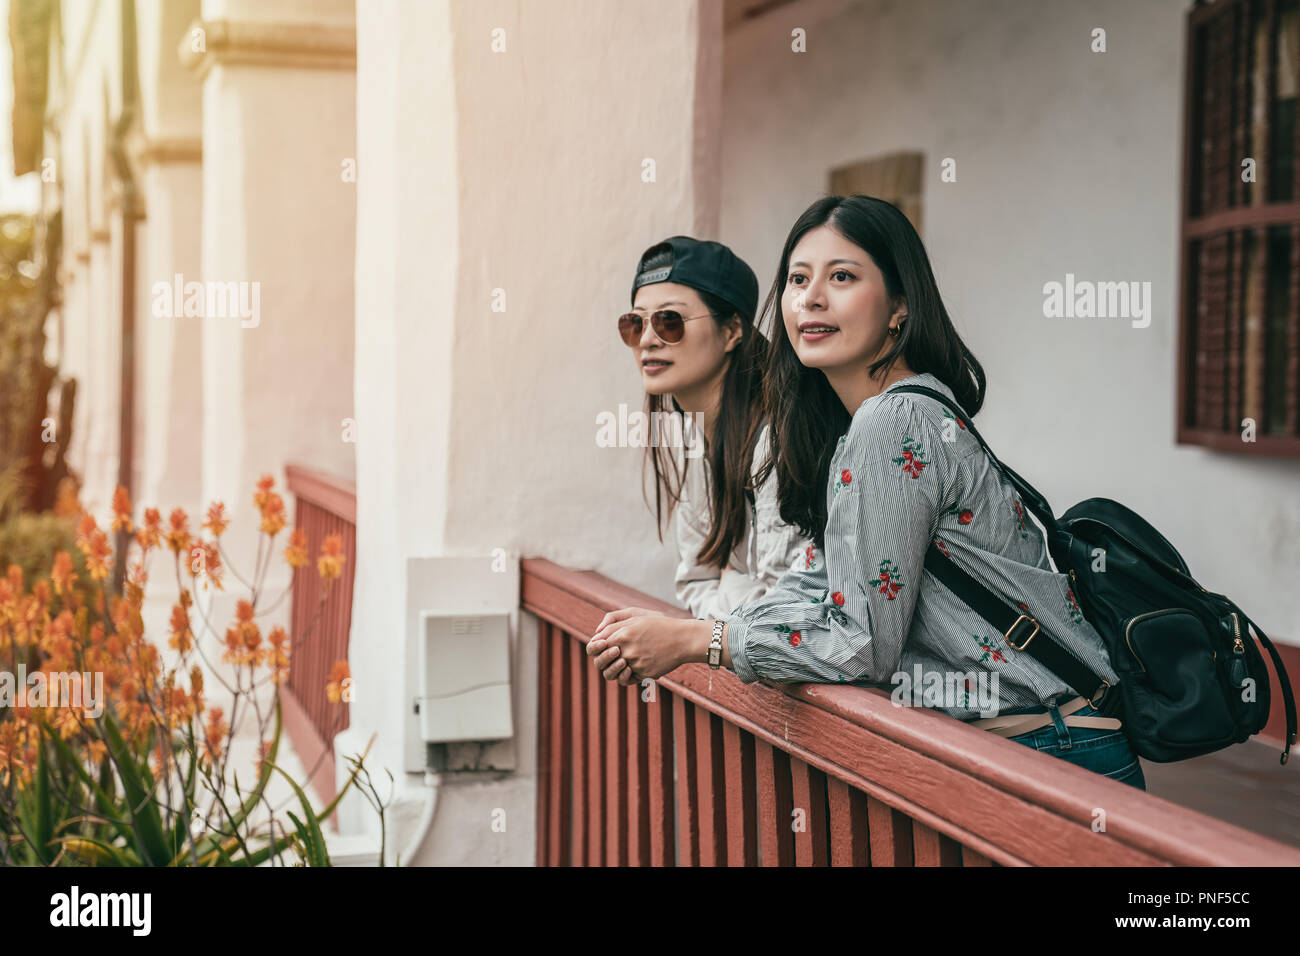 Schöne junge Schwestern stützte sich auf die Leitplanke für eine Pause in einem alten berühmten Sightseeing Gebäude. Stockfoto